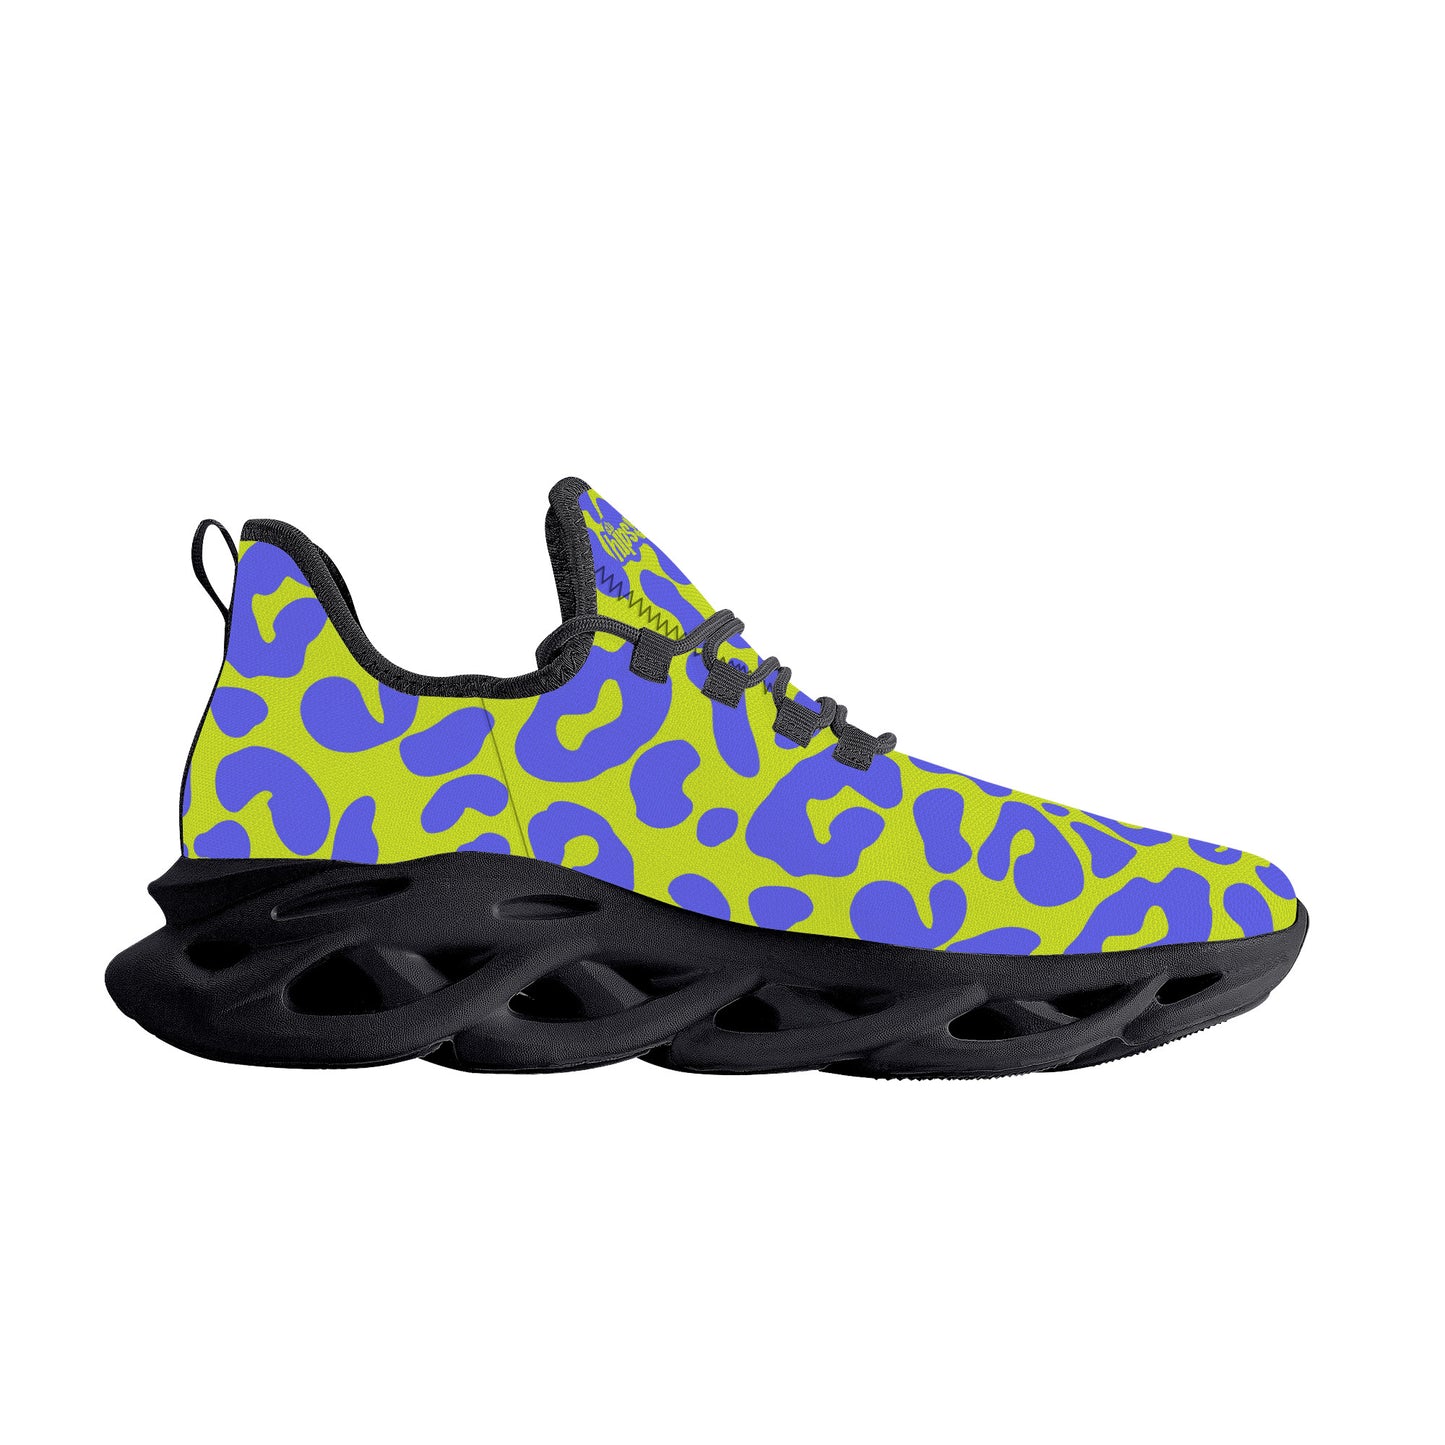 "Leopard" Flex Control Sneaker